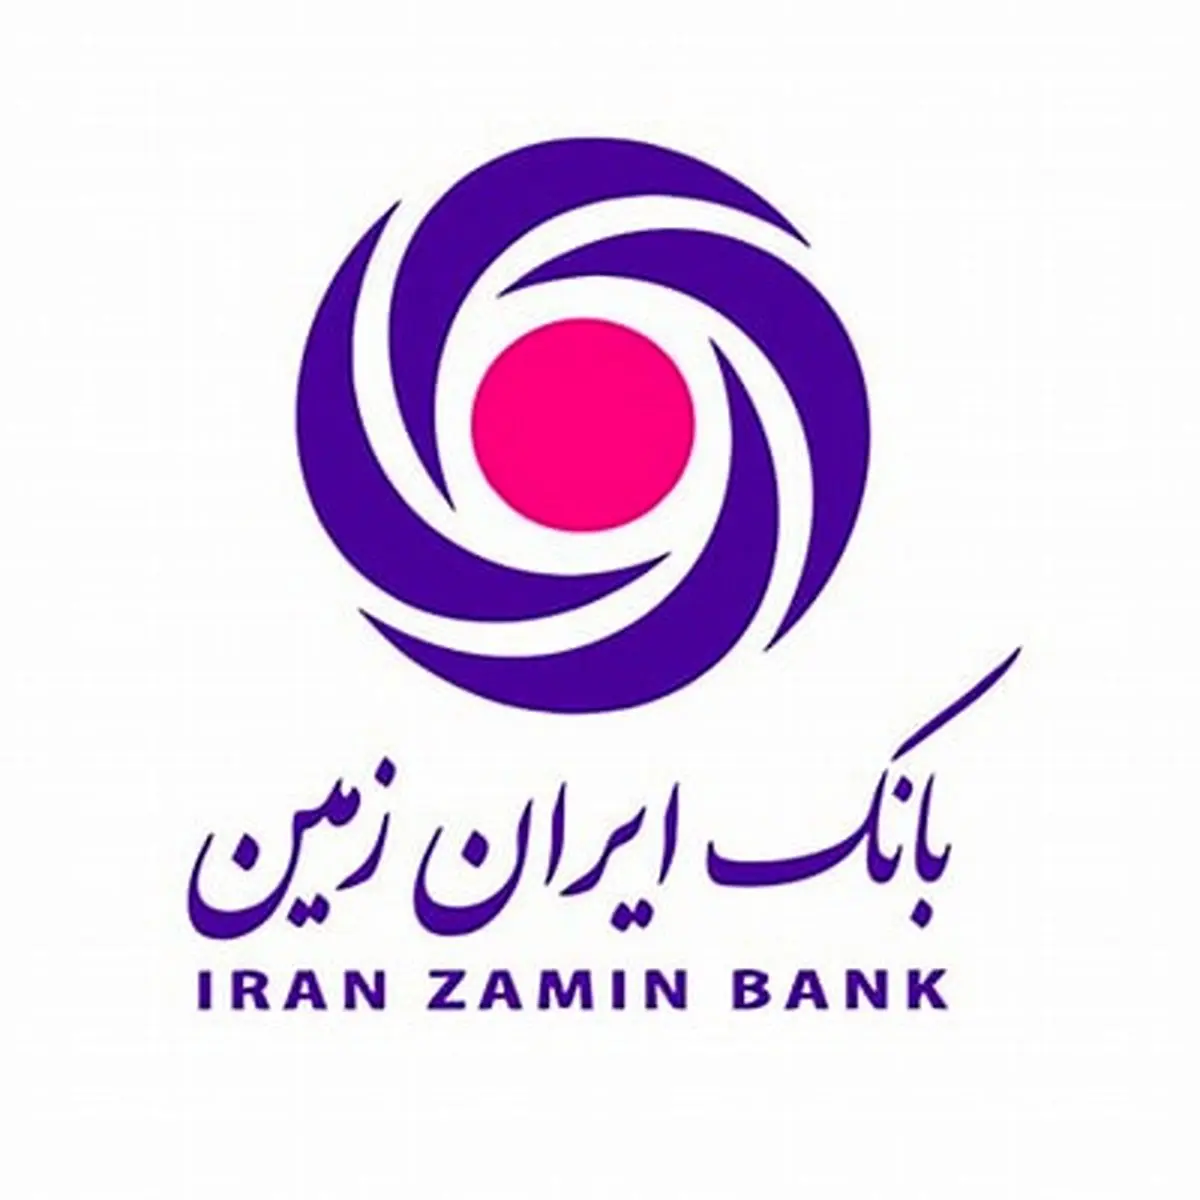 نگاهی به مهمترین اخبار بانک ایران زمین در سال 1402